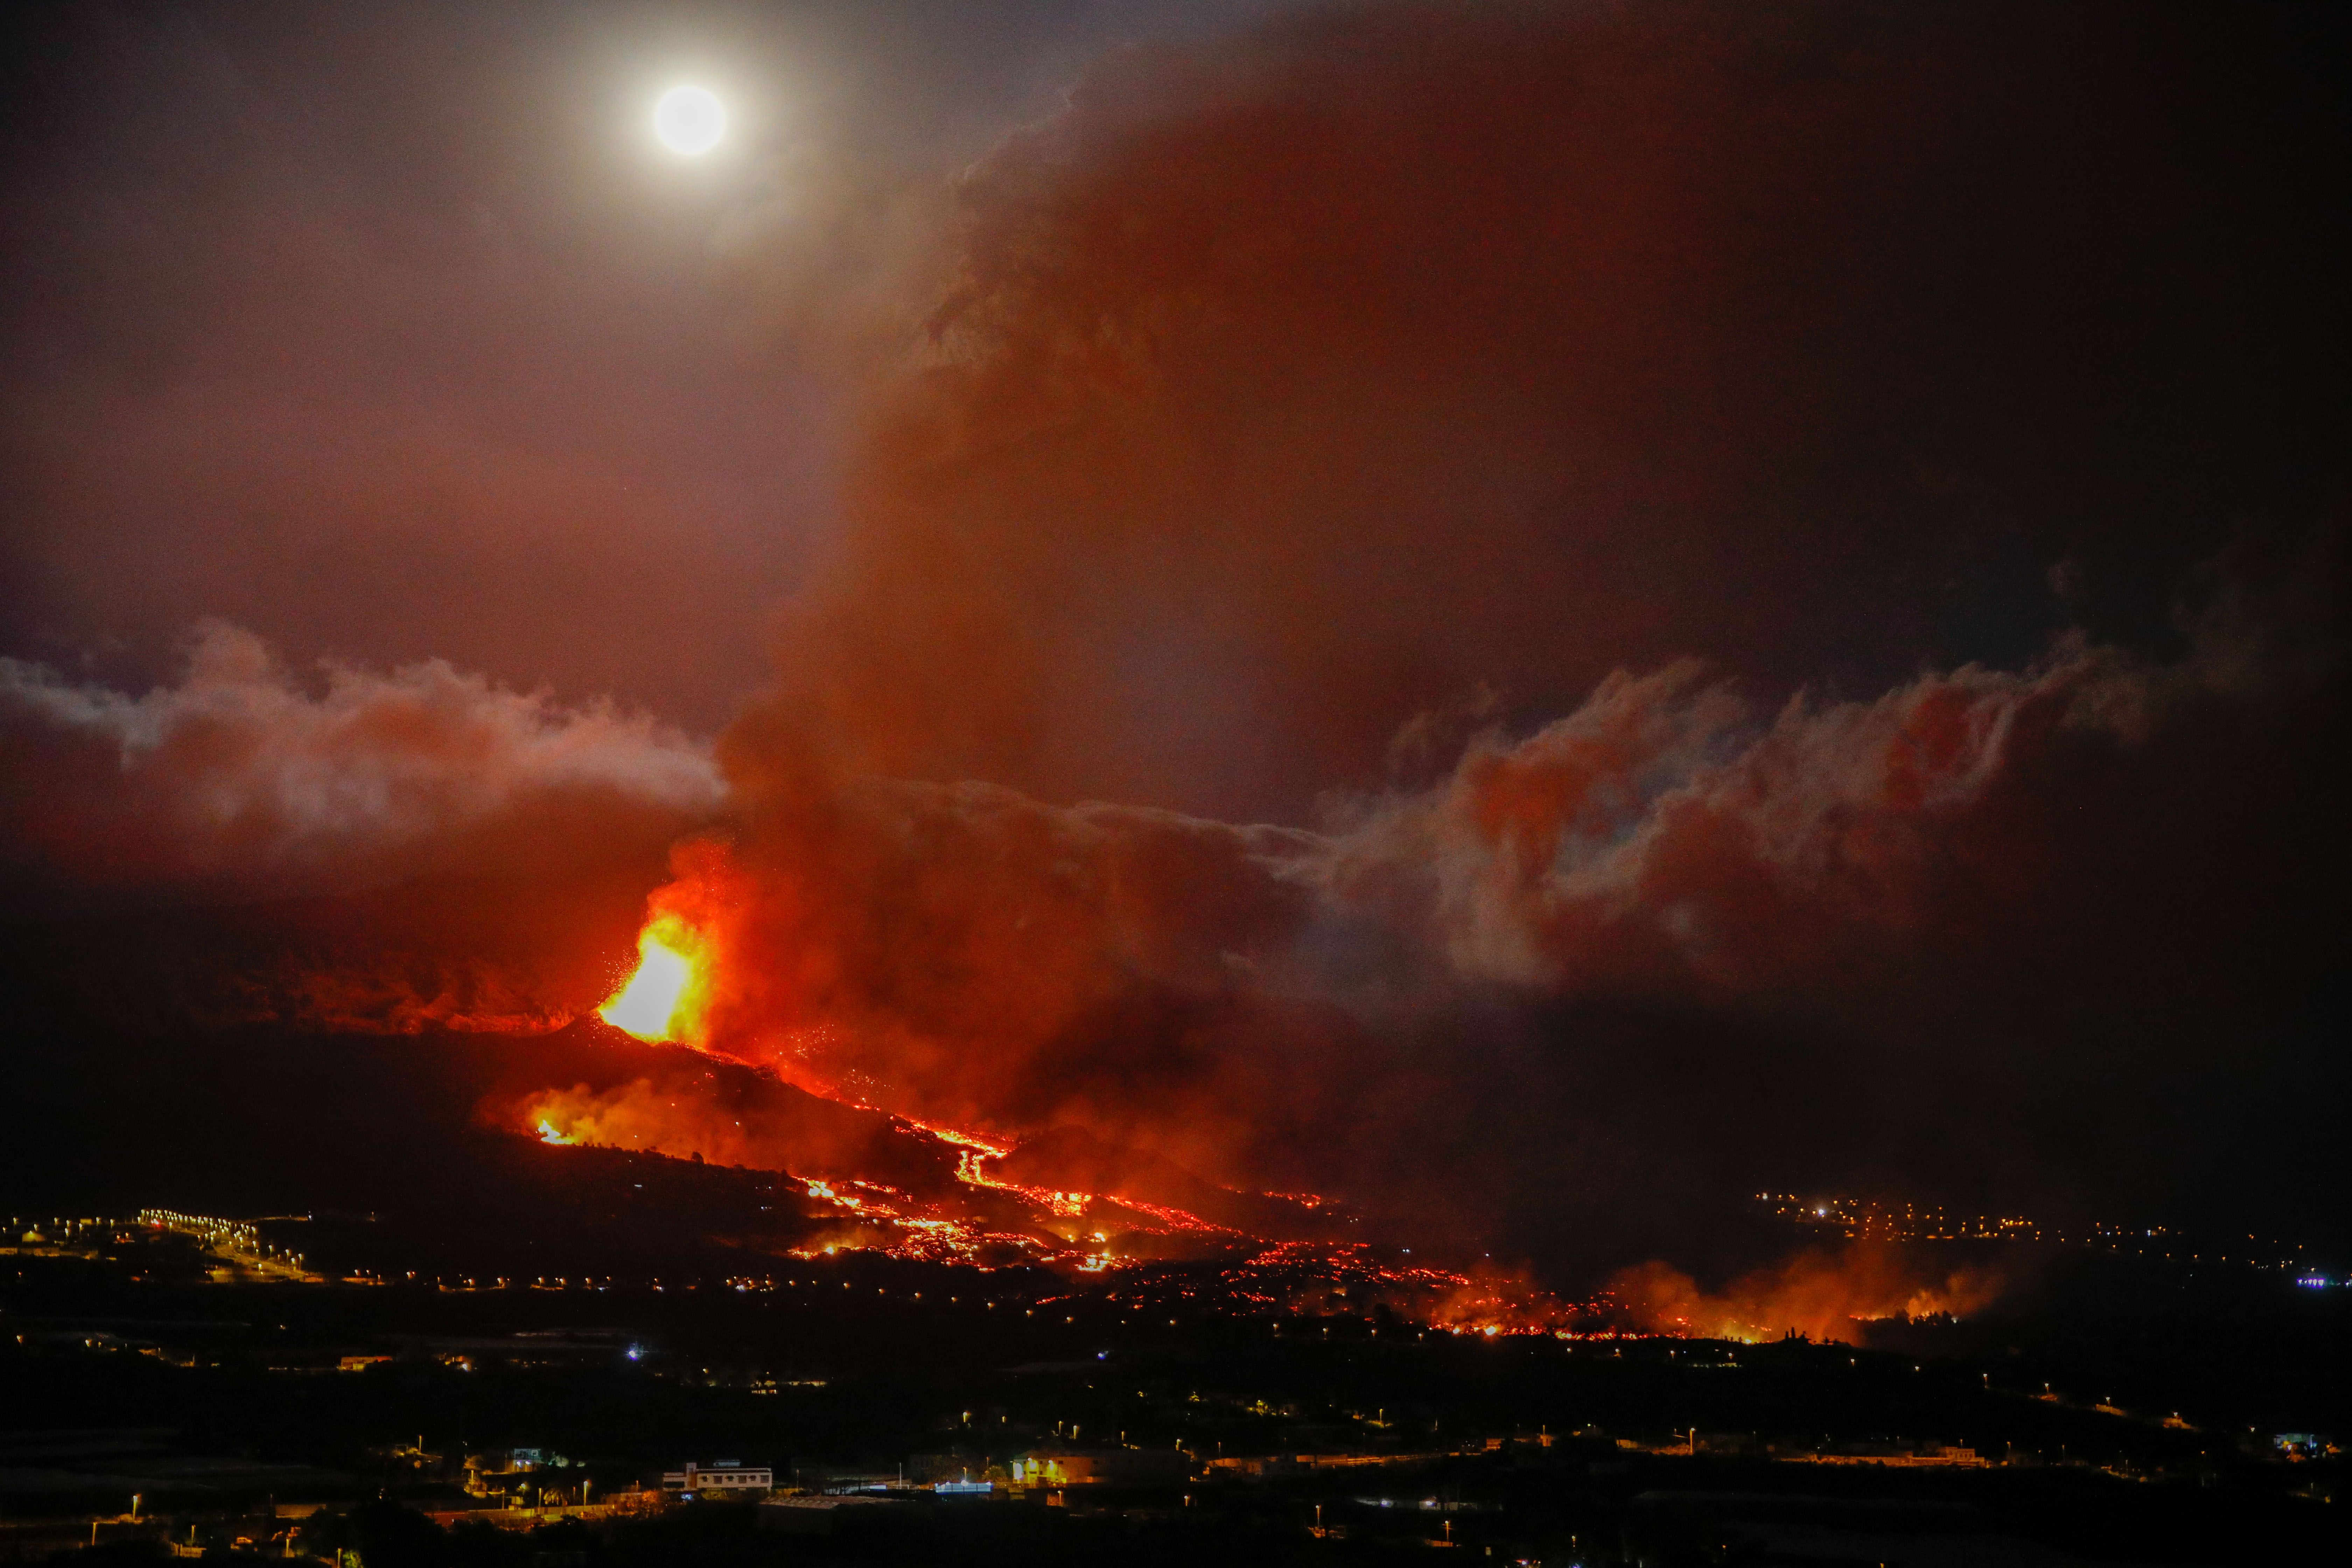 La erupción en La Palma durará entre 24 y 84 días según el Instituto Volcanológico de Canarias